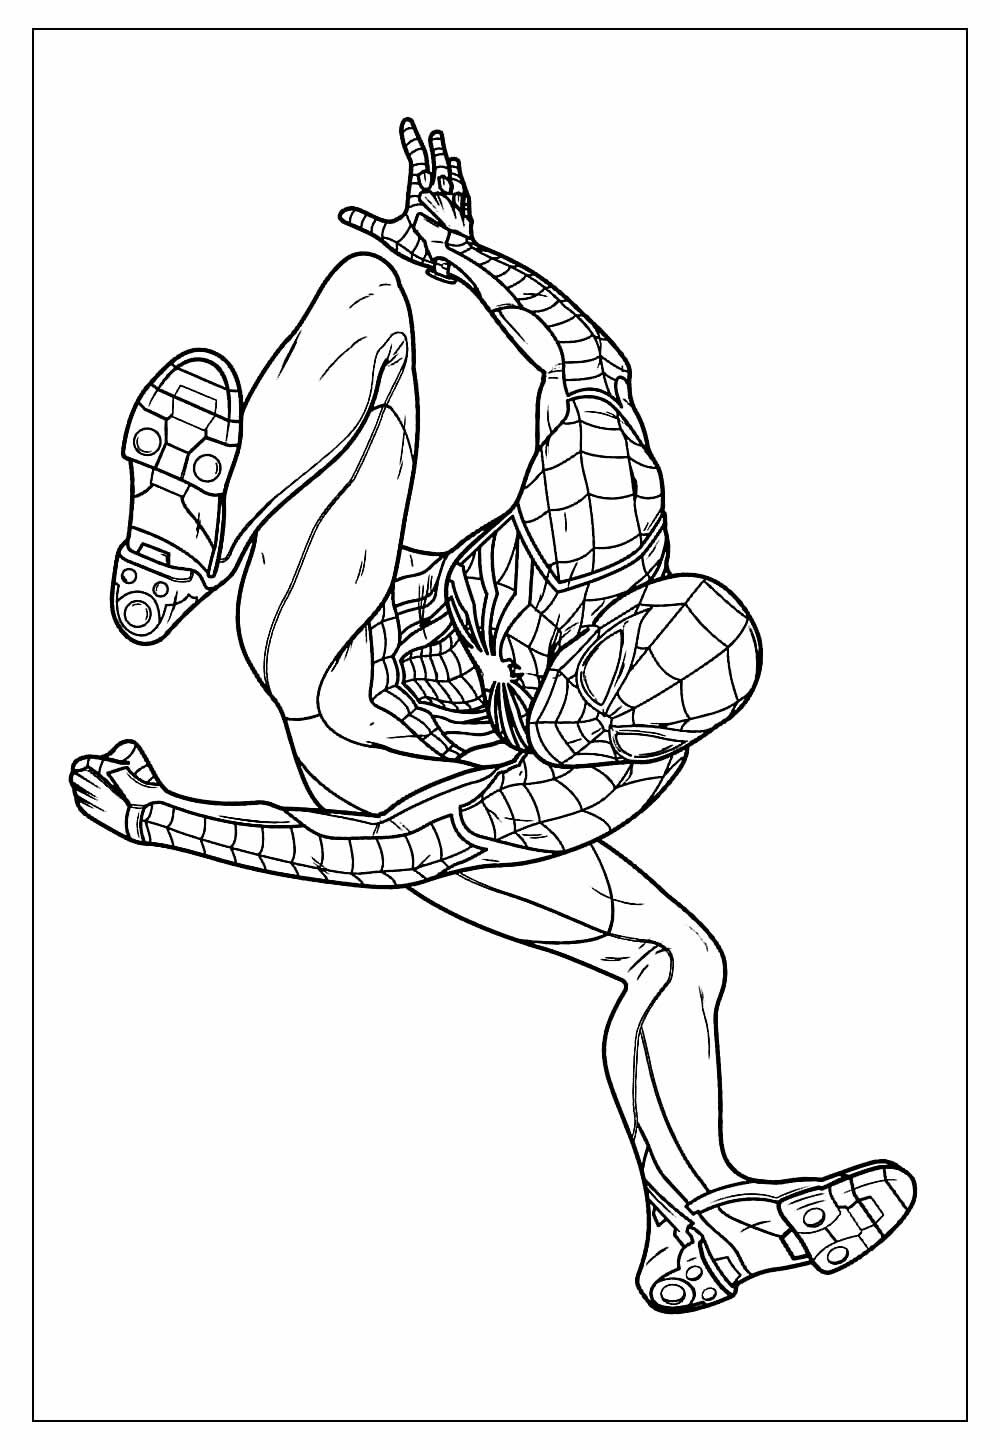 Desenho do Homem-Aranha para colorir e pintar